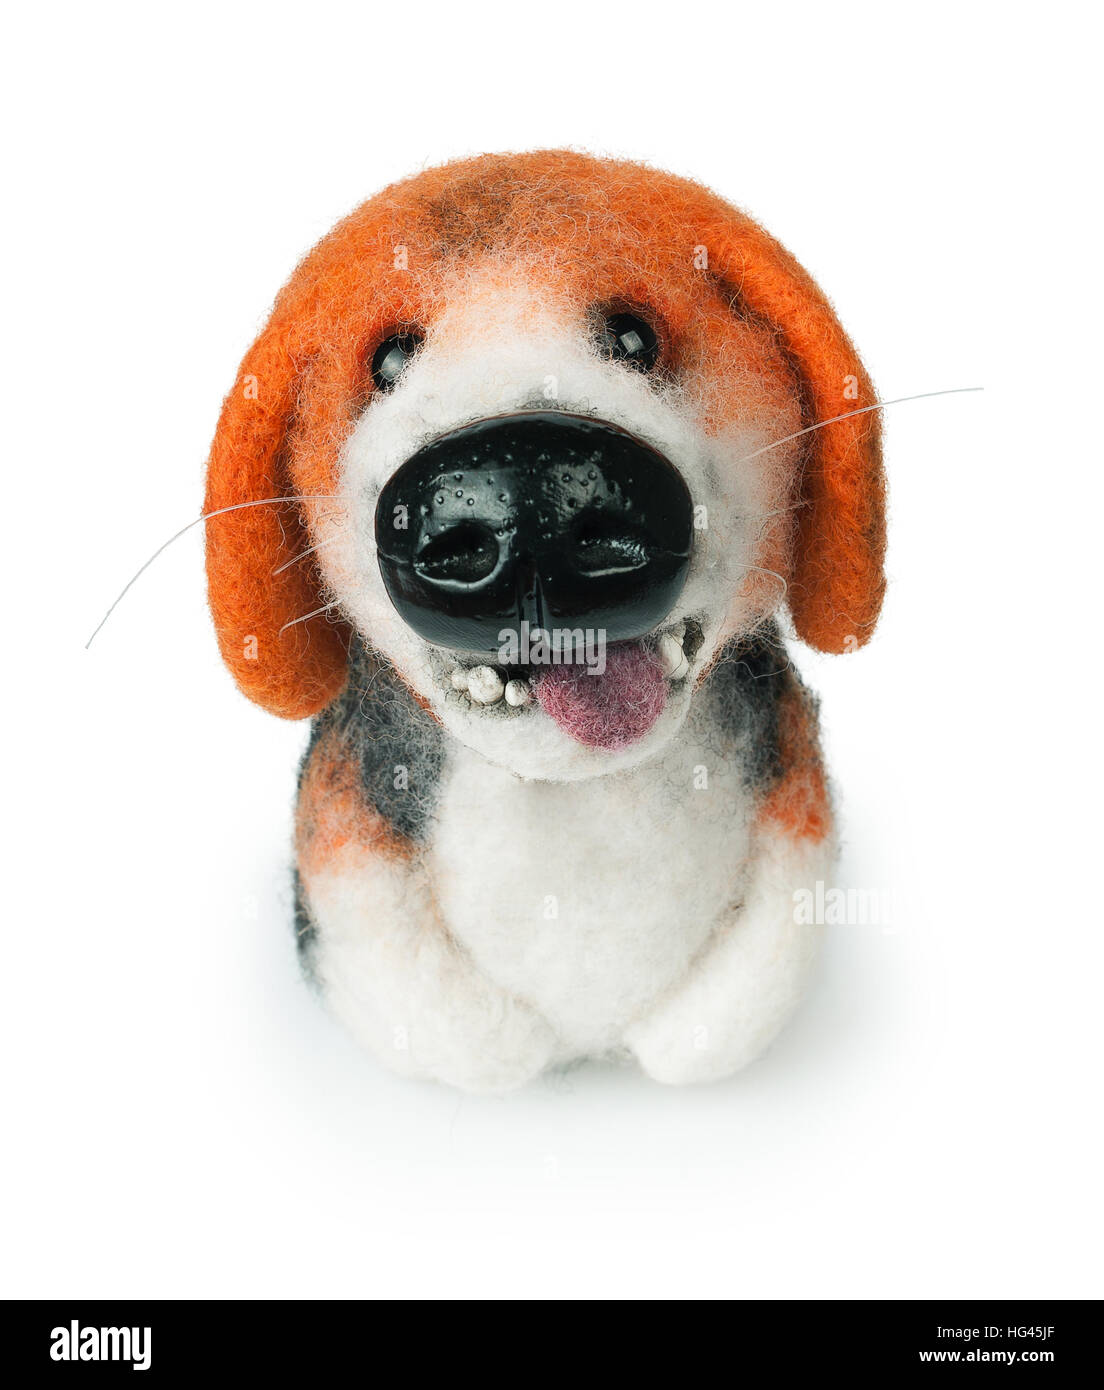 small felt  handmade toy dog isolated on white background Stock Photo